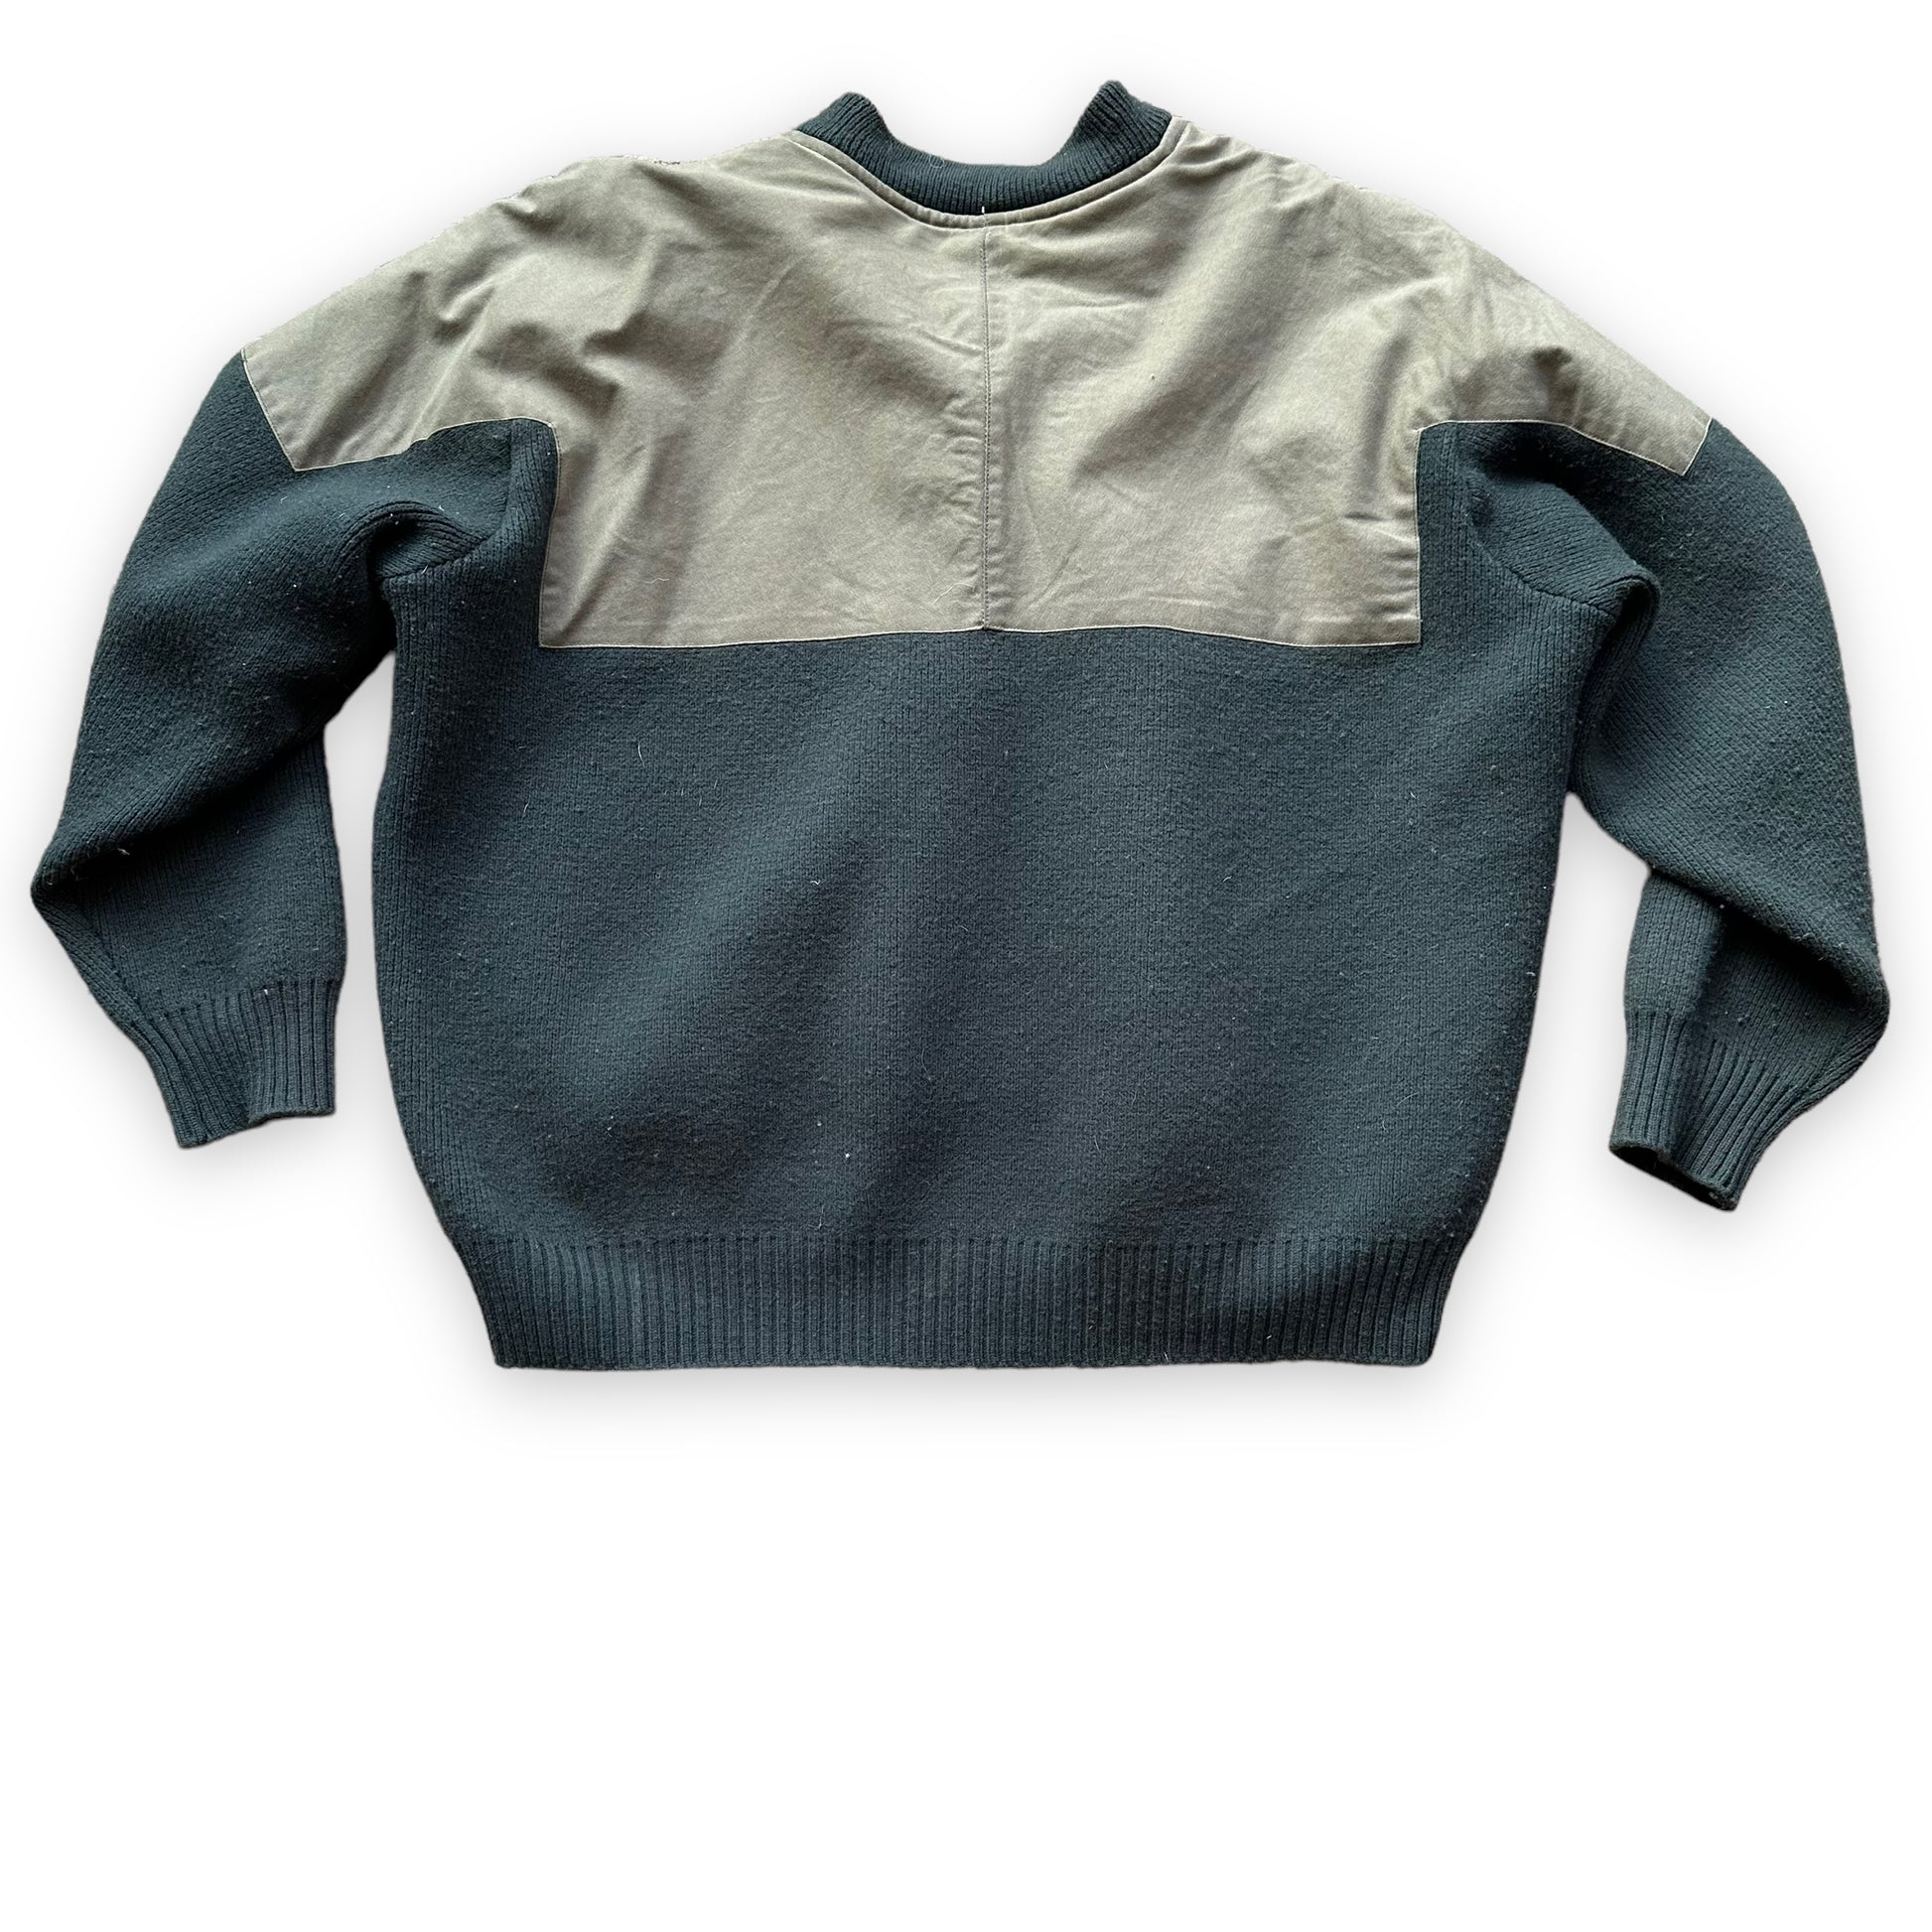 Rear View on Filson Guide Sweater SZ XL |  Barn Owl Vintage Goods | Vintage Filson Workwear Seattle